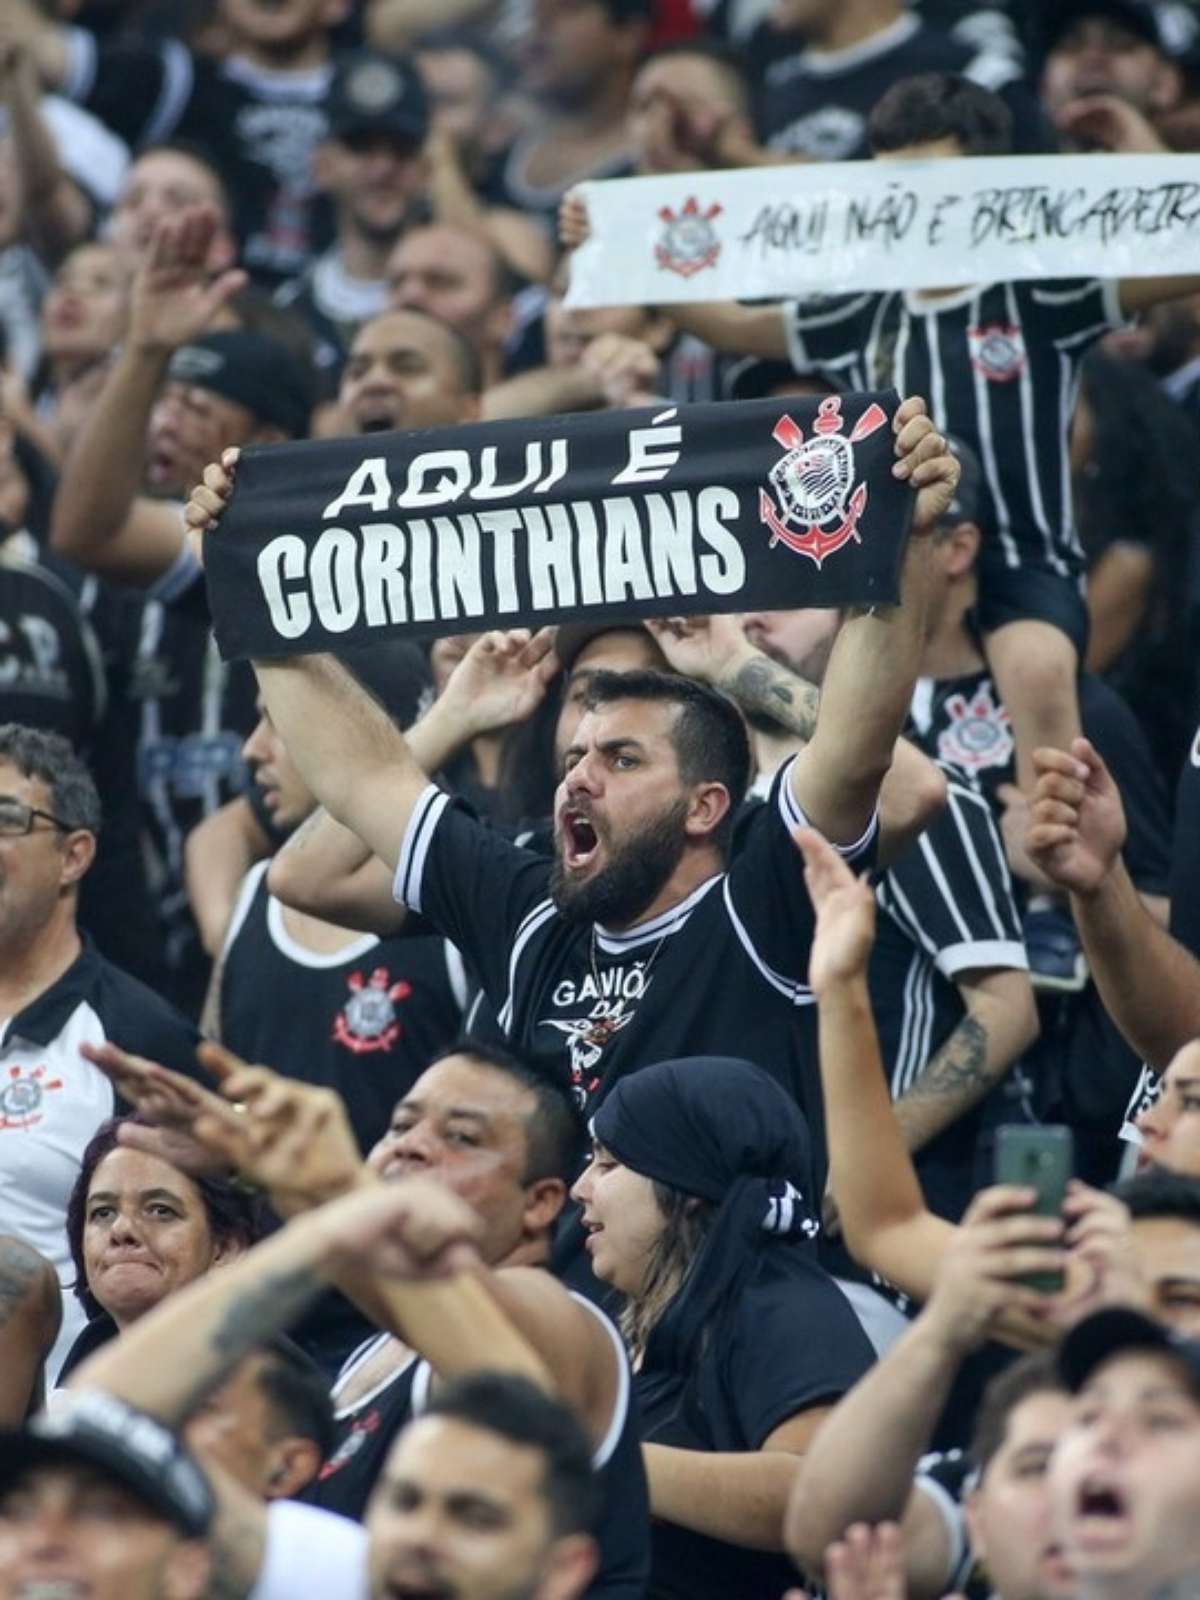 Globoplay - Os bastidores do Timão na temporada 2020! O 1º episódio de  #AcessoTotal - Corinthians já disponível aqui comigo para quem tem  #GloboplayMaisCanaisAoVivo. ⚽